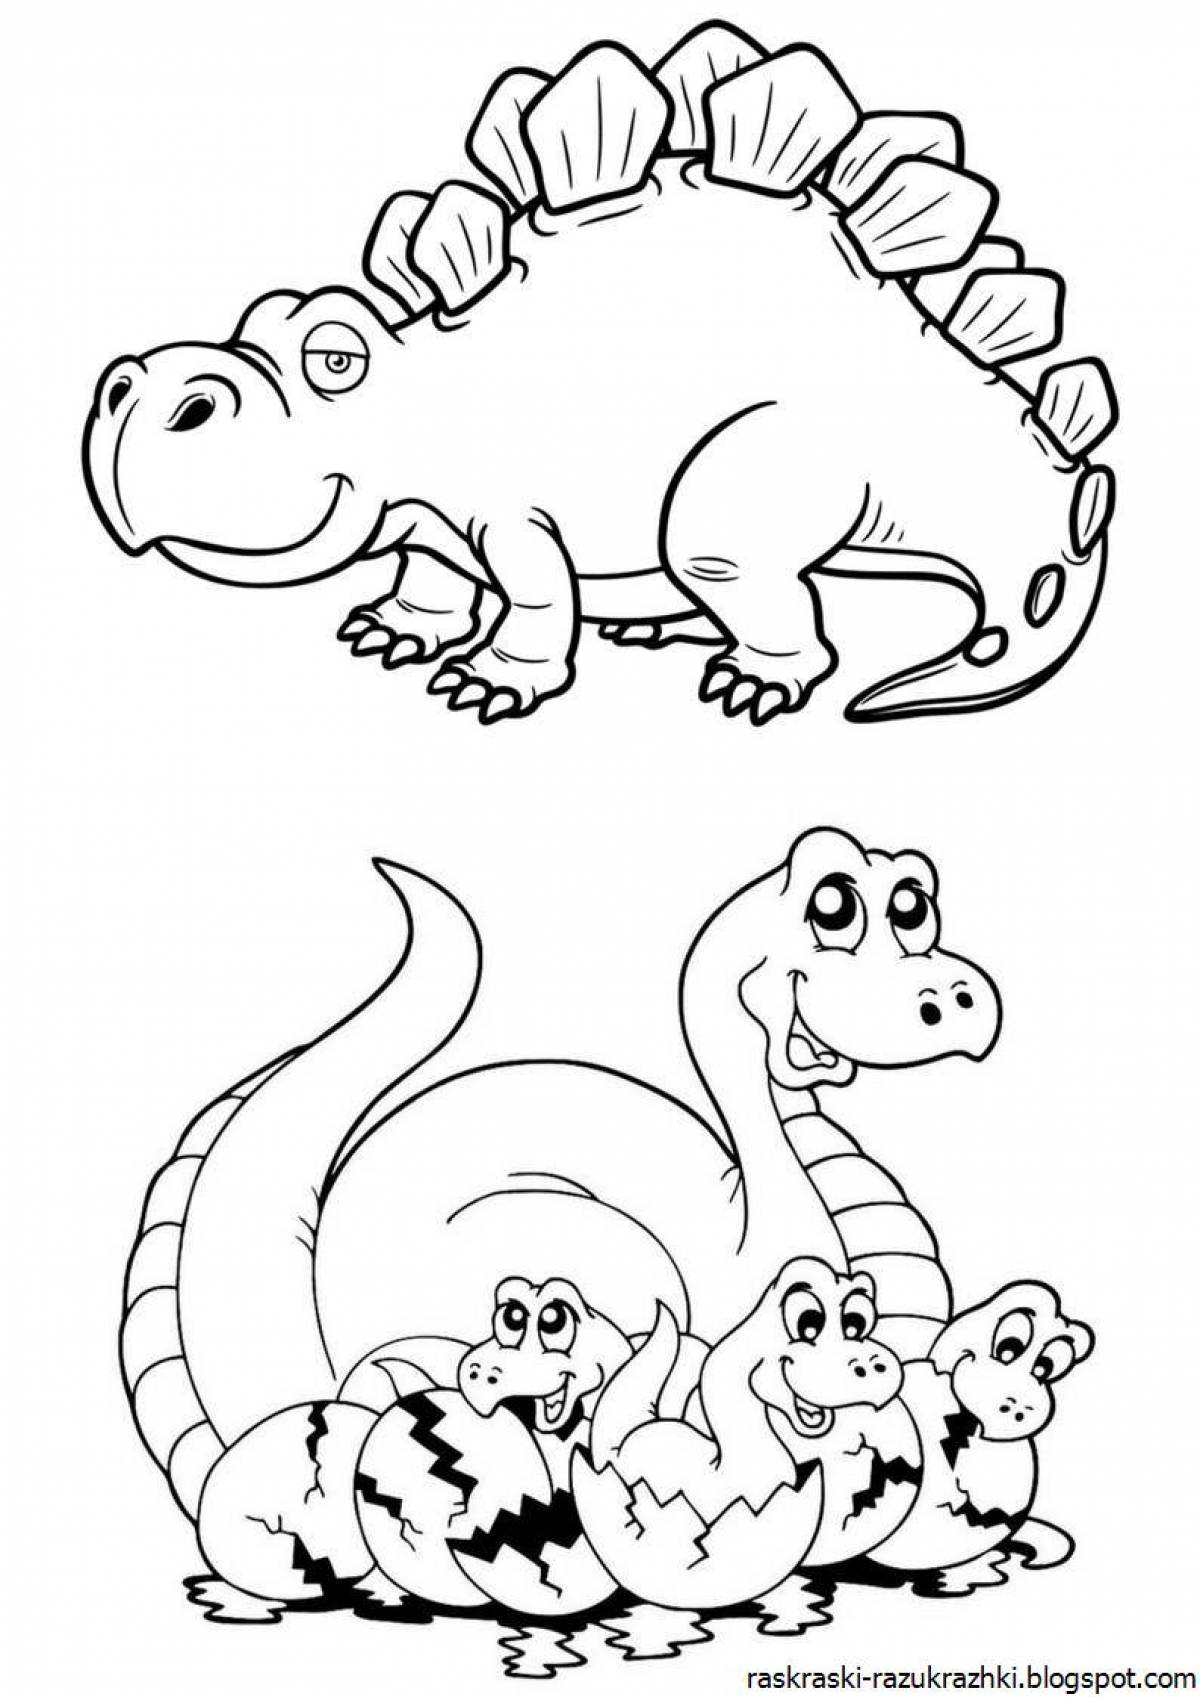 Цветная яркая страница раскраски динозавров для детей 4-5 лет